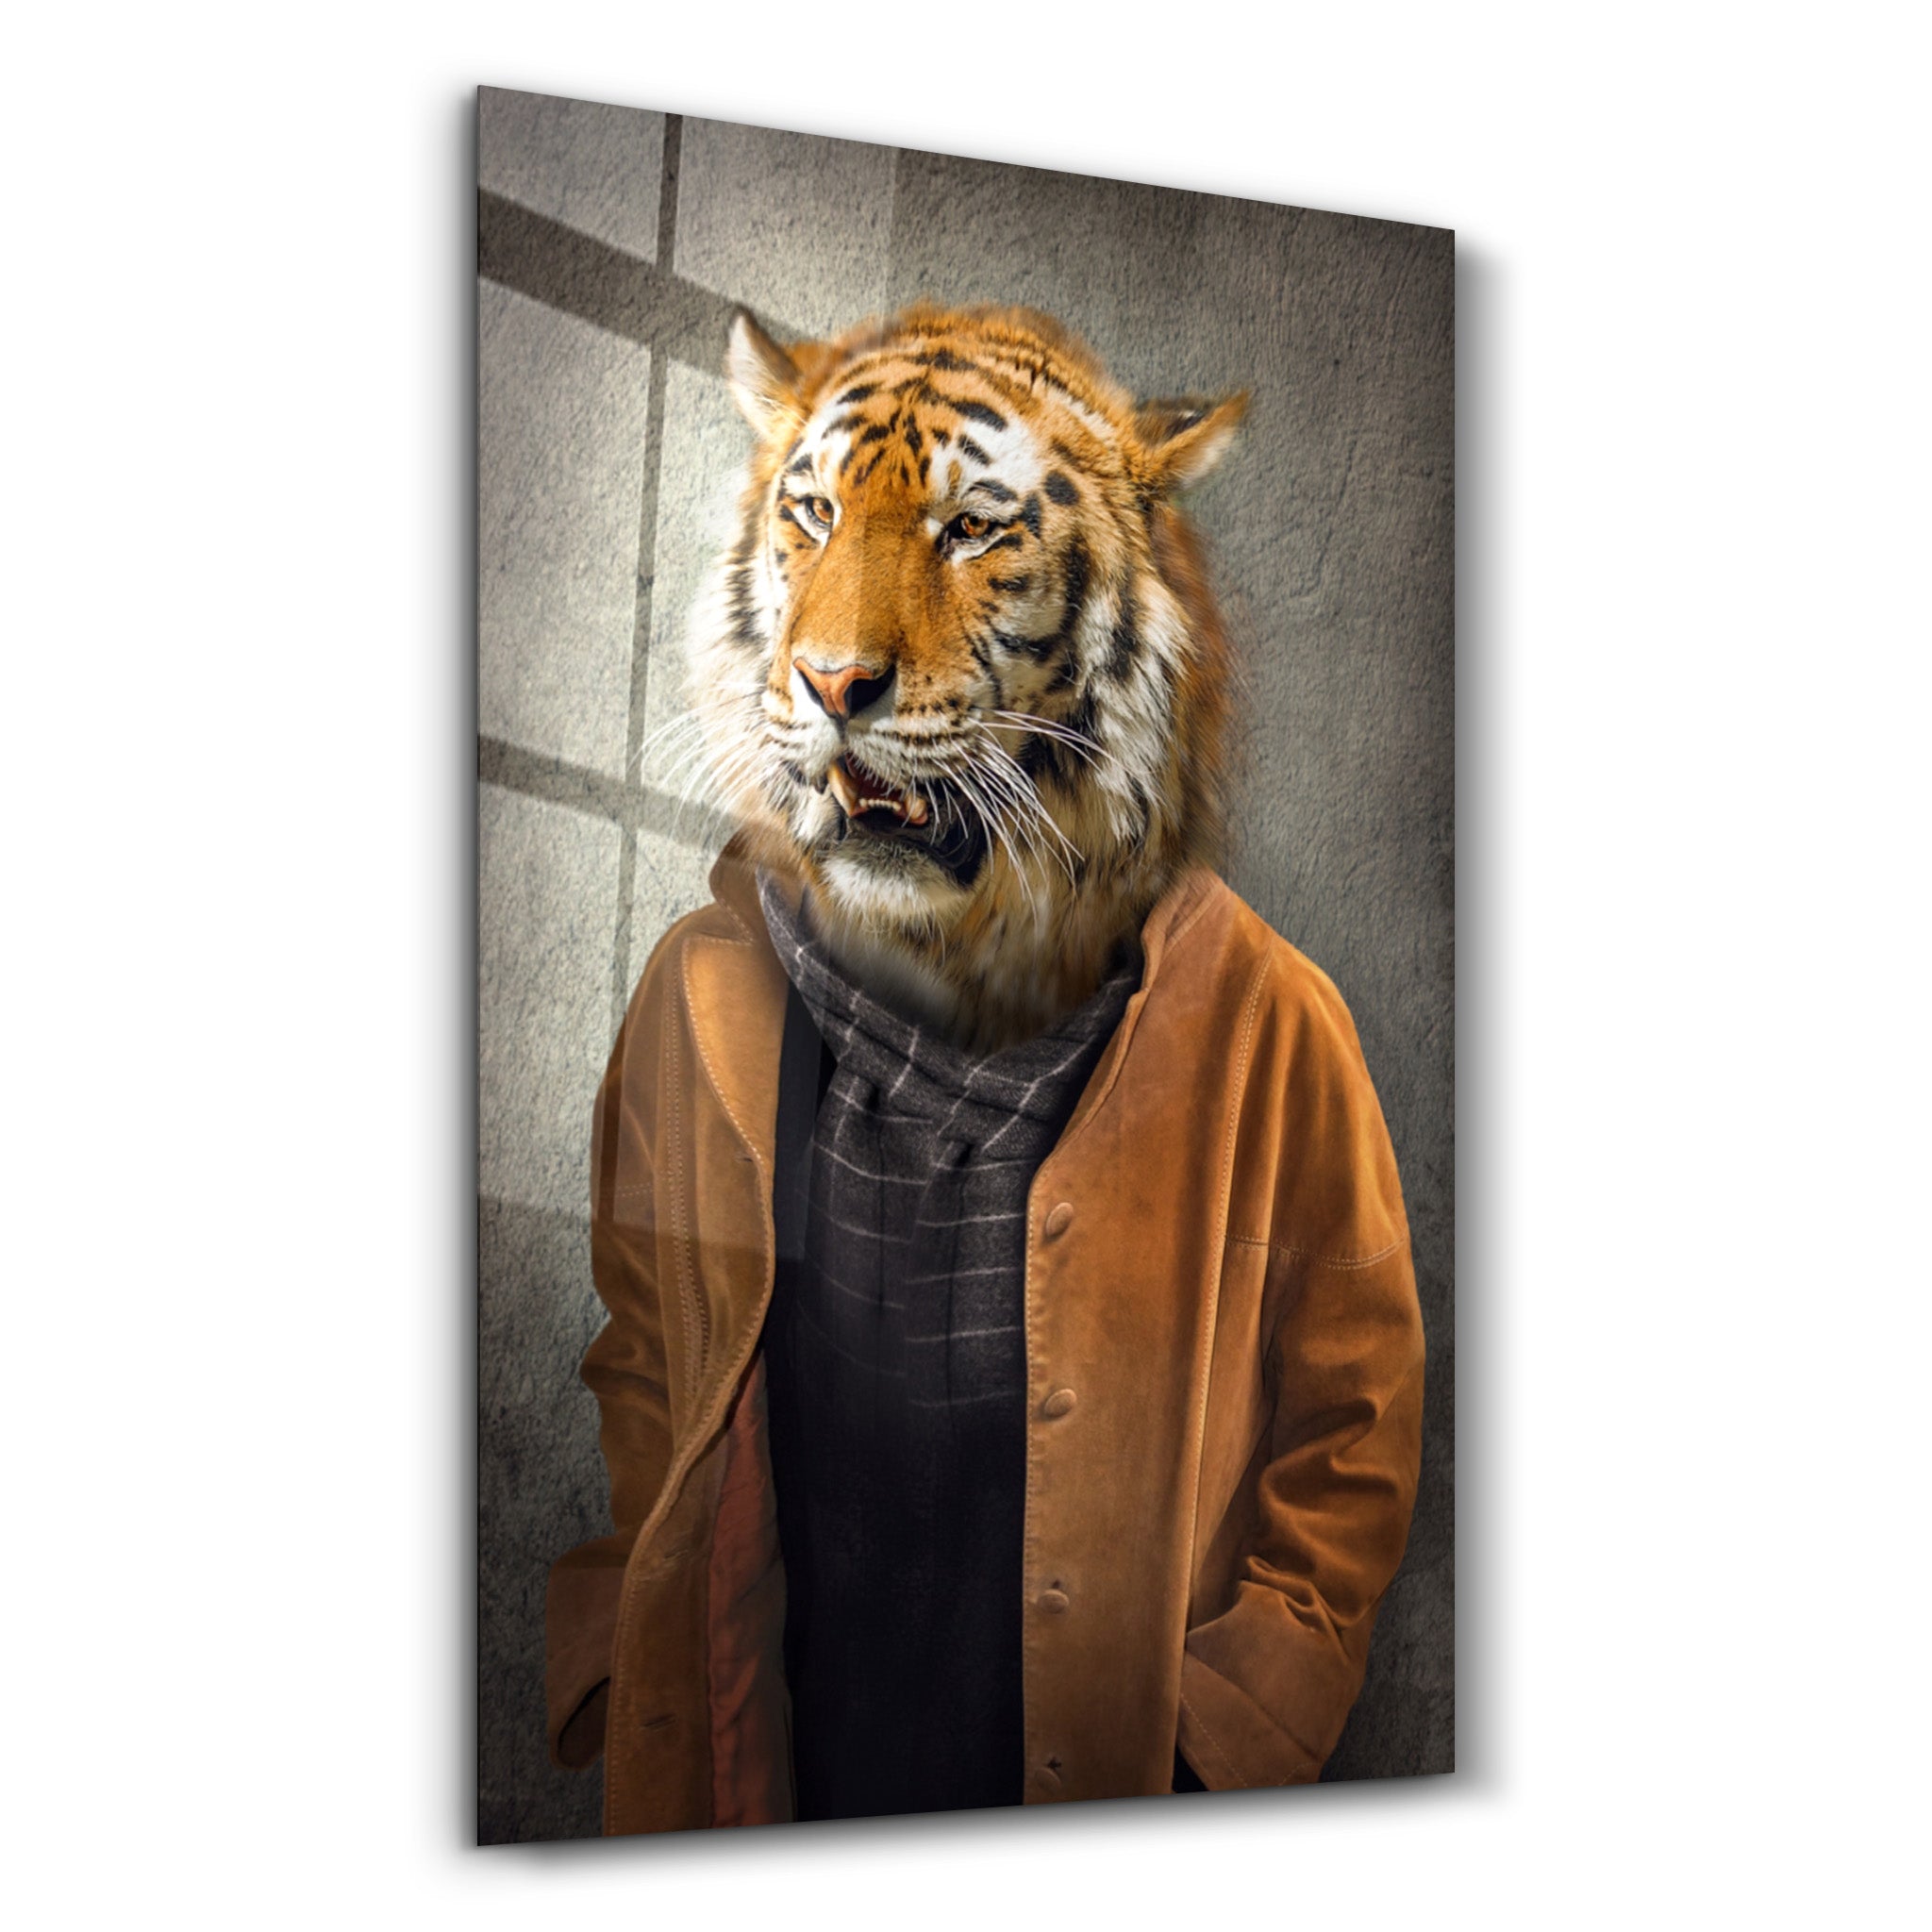 ・"Tiger Head"・Glass Wall Art - ArtDesigna Glass Printing Wall Art